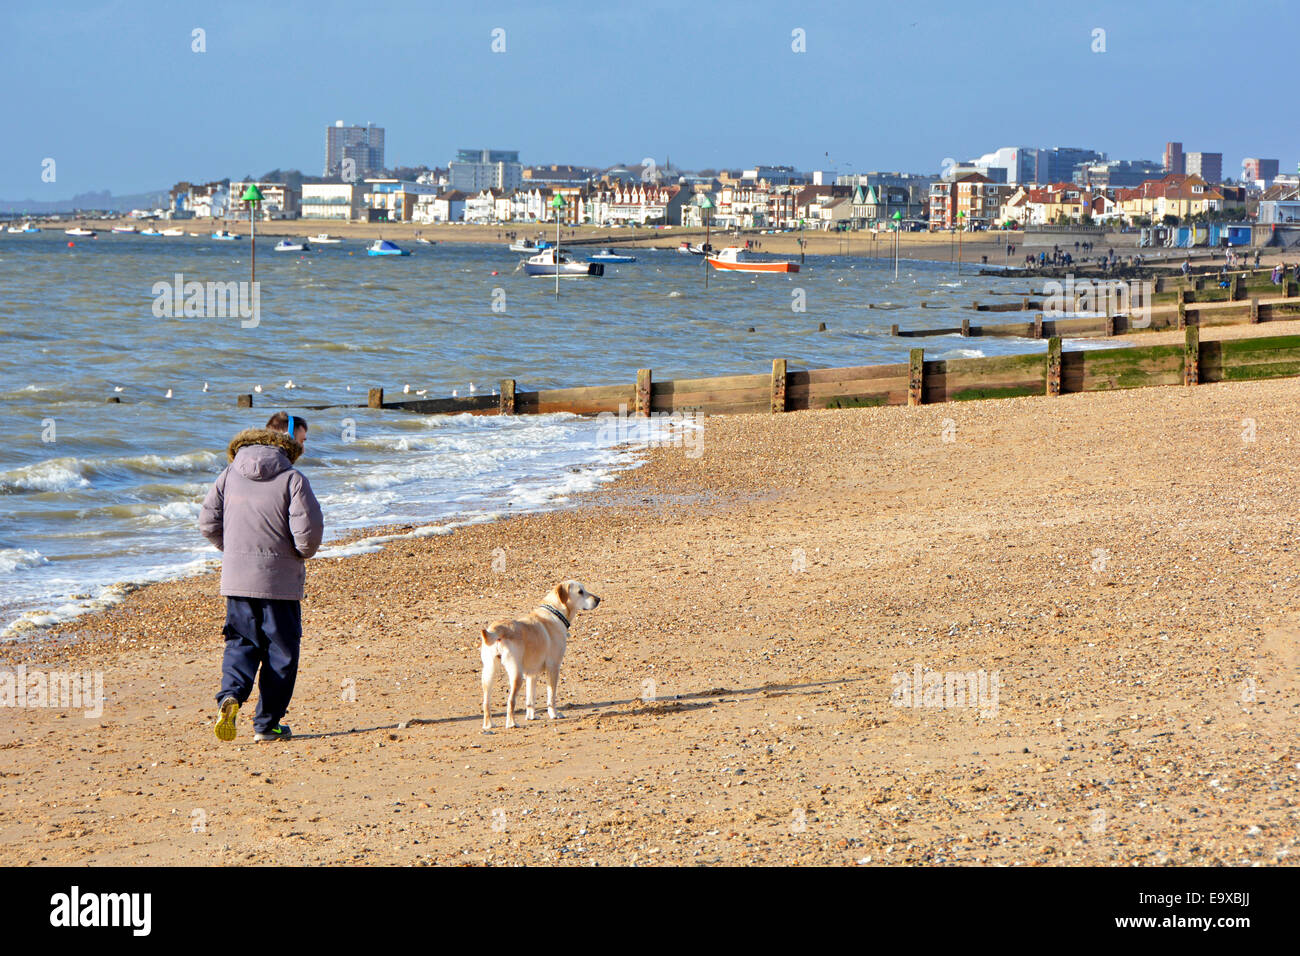 Homme marchant chien en hiver froid février jour à côté de l'estuaire de la Tamise sur la plage de Shoeburyness brise-lames groyne & Southend sur Sea Skyline Essex Angleterre Royaume-Uni Banque D'Images